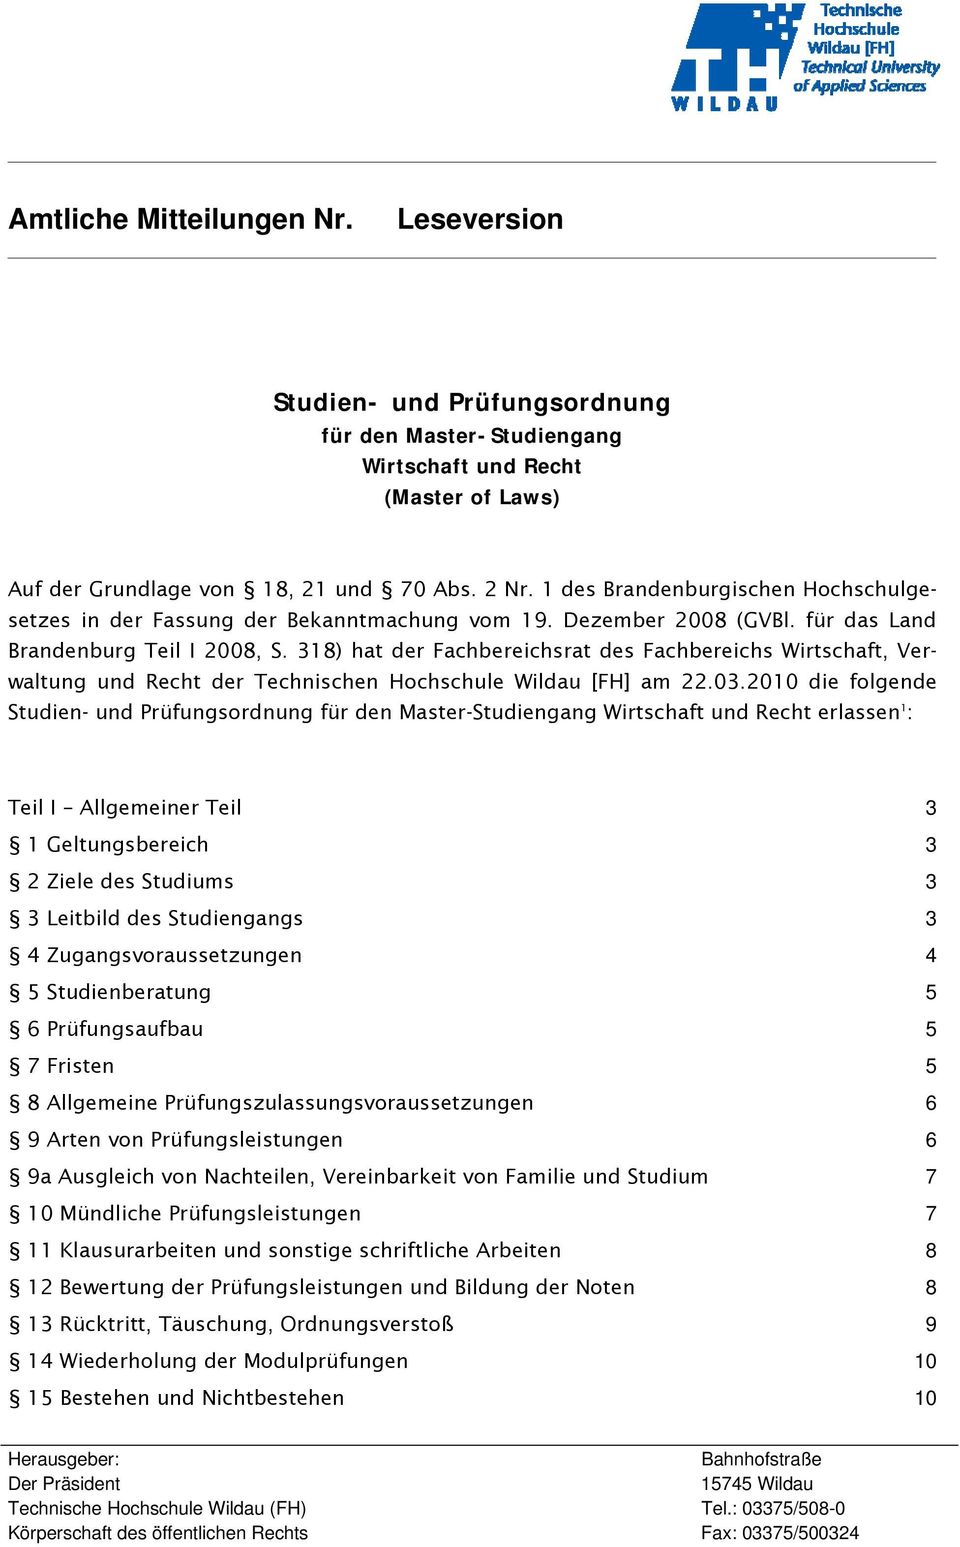 318) hat der Fachbereichsrat des Fachbereichs Wirtschaft, Verwaltung und Recht der Technischen Hochschule Wildau [FH] am 22.03.